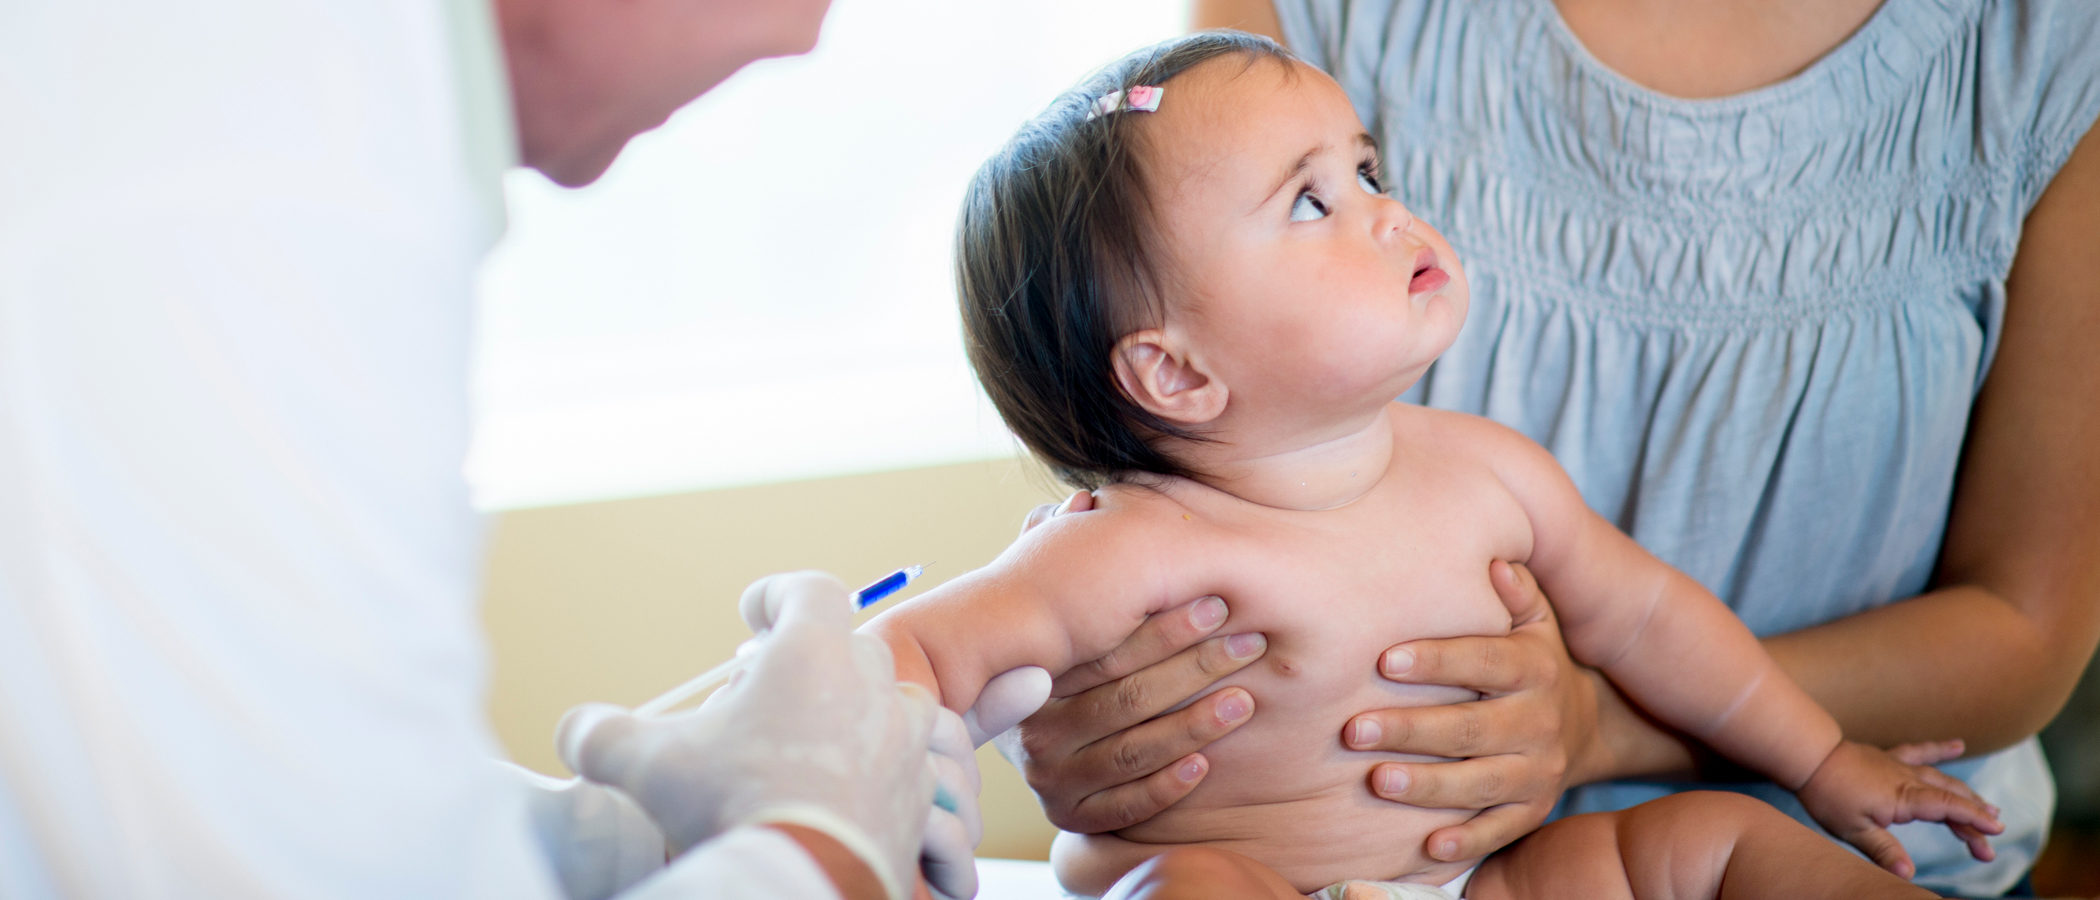 Las vacuna contra la varicela en bebés